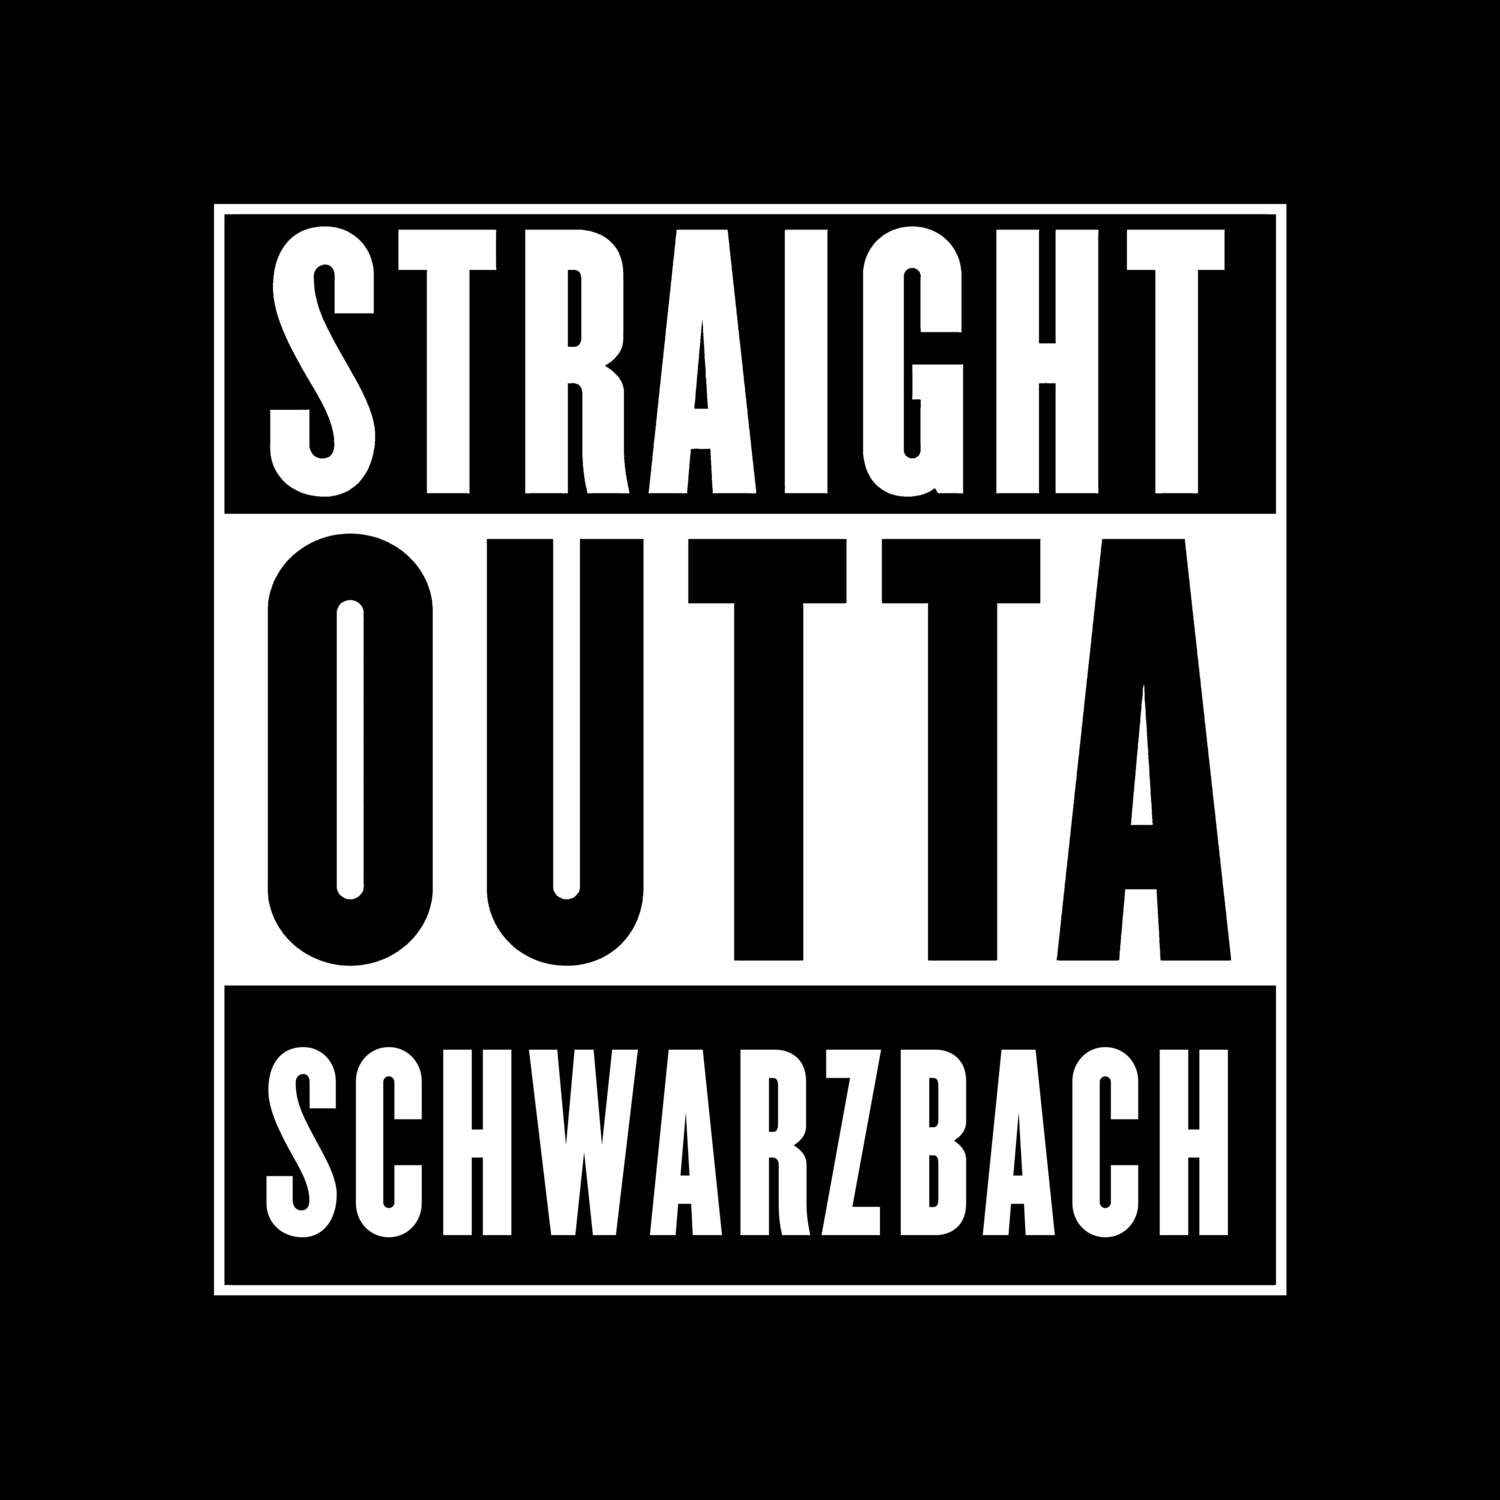 Schwarzbach T-Shirt »Straight Outta«